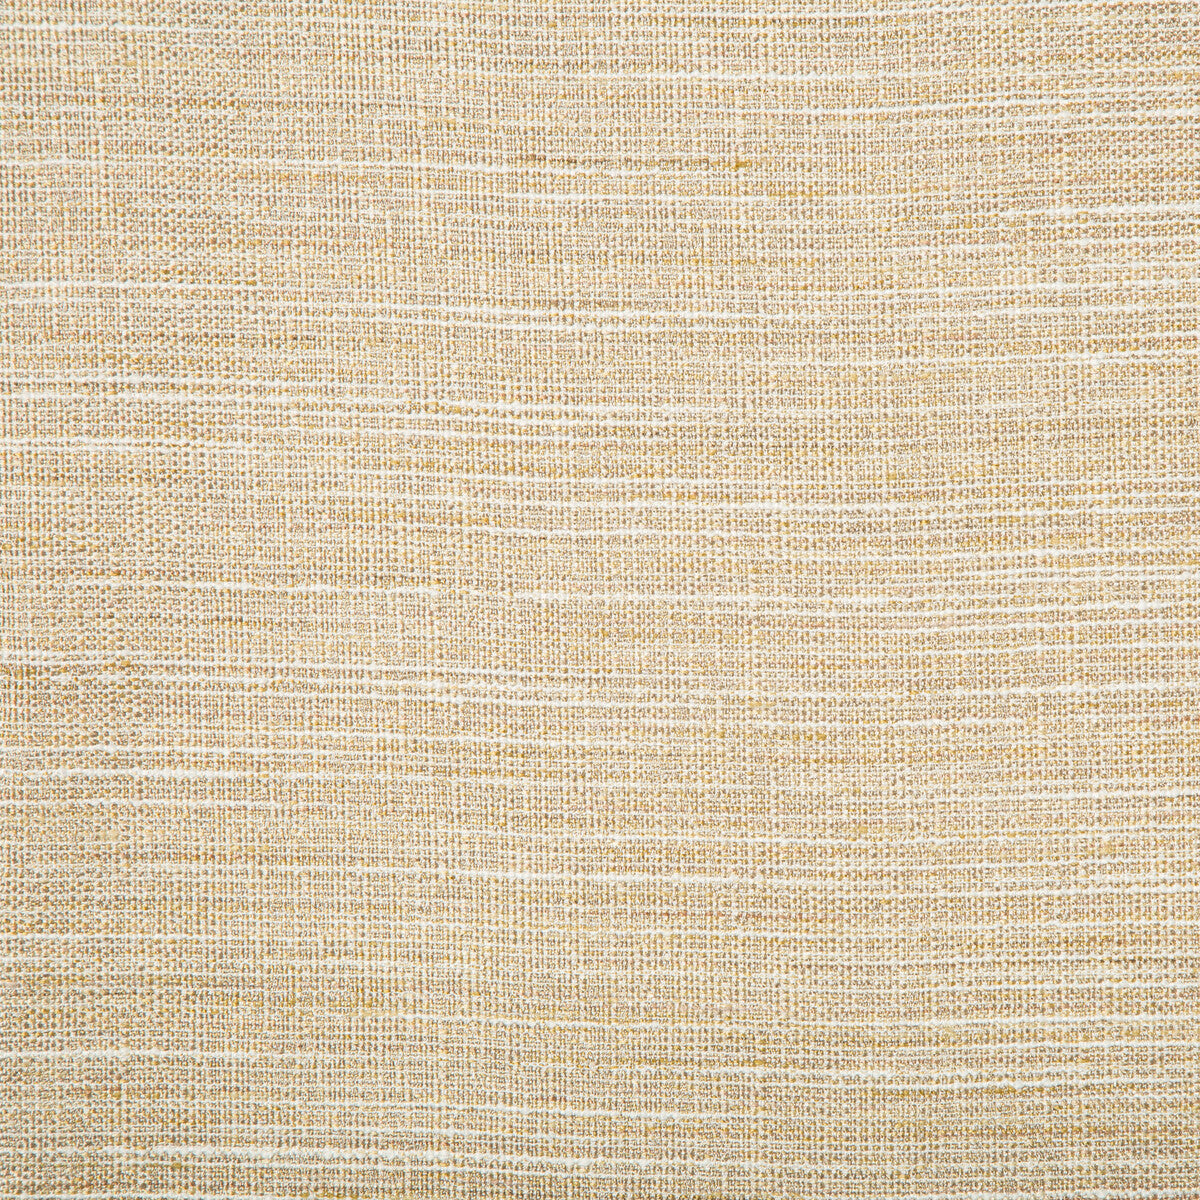 Kravet Basics fabric in 4673-416 color - pattern 4673.416.0 - by Kravet Basics